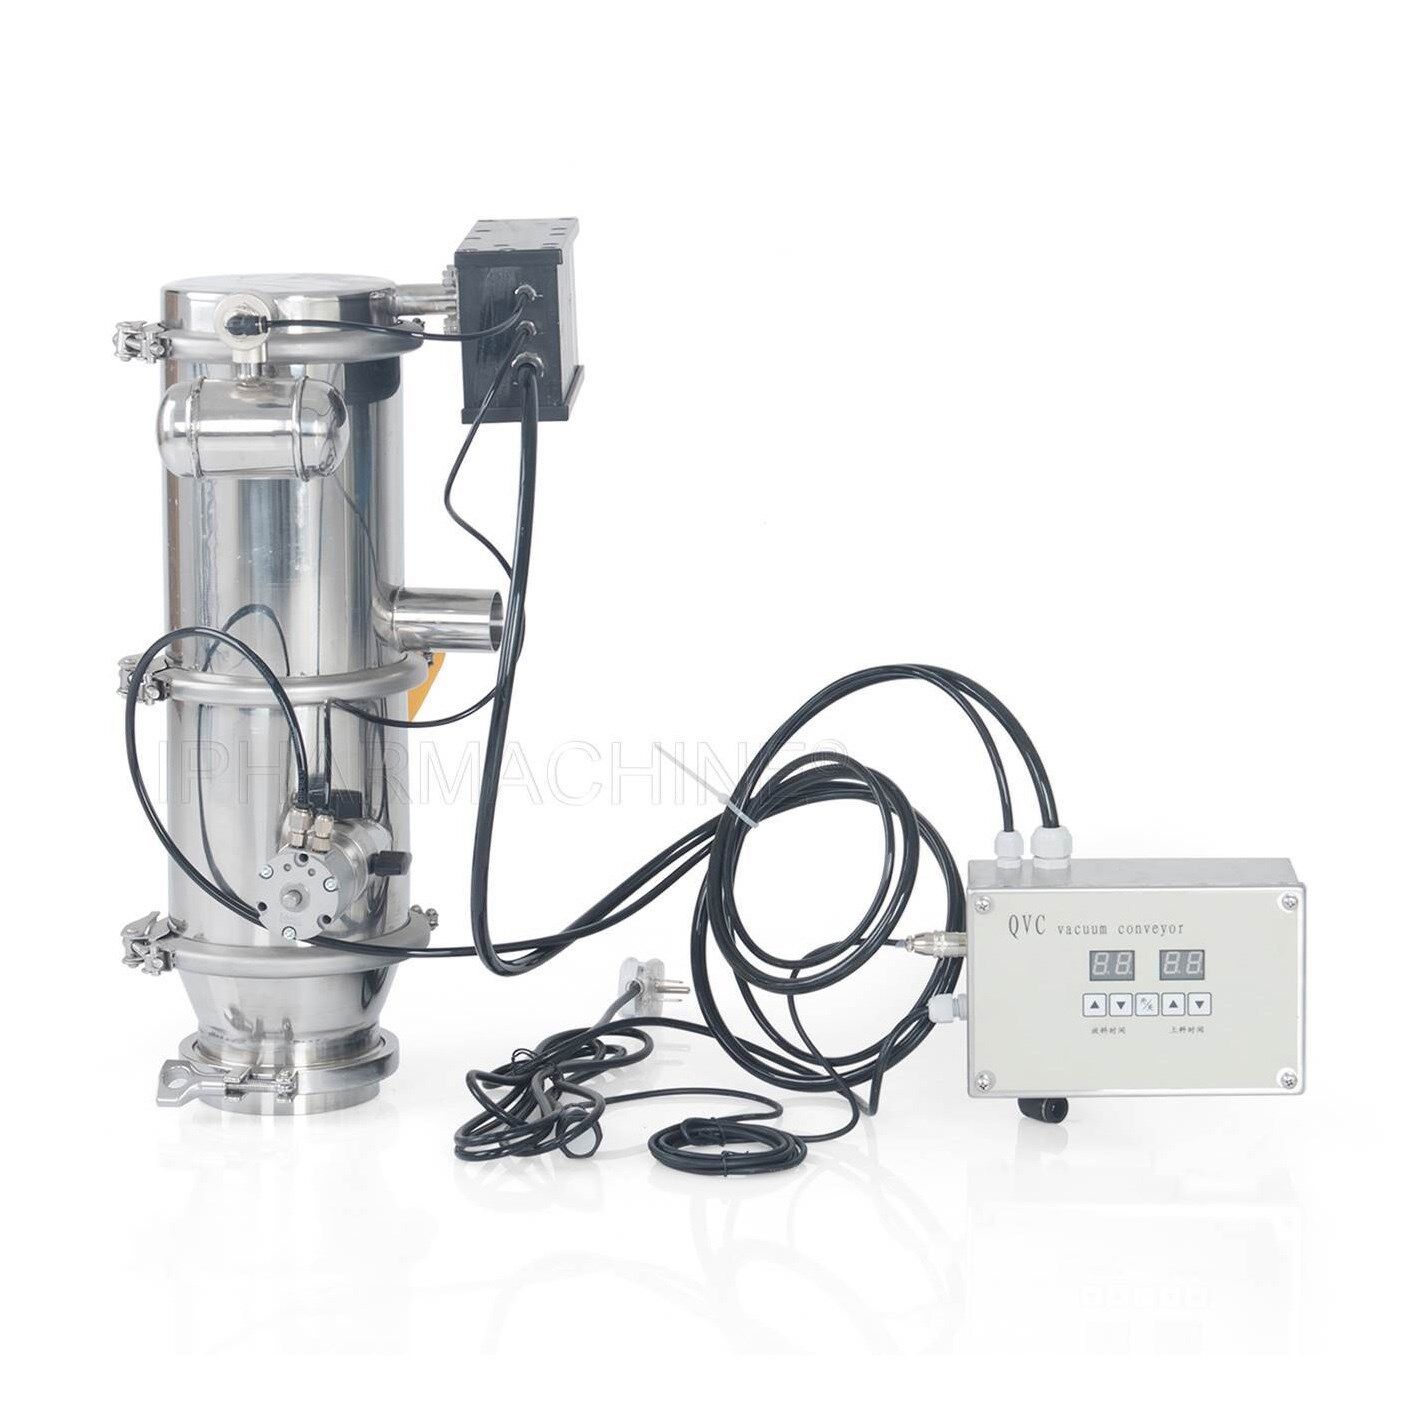 V Blender Dry Powder Mixer Blending Machine V50 - V300 - IPharmachine